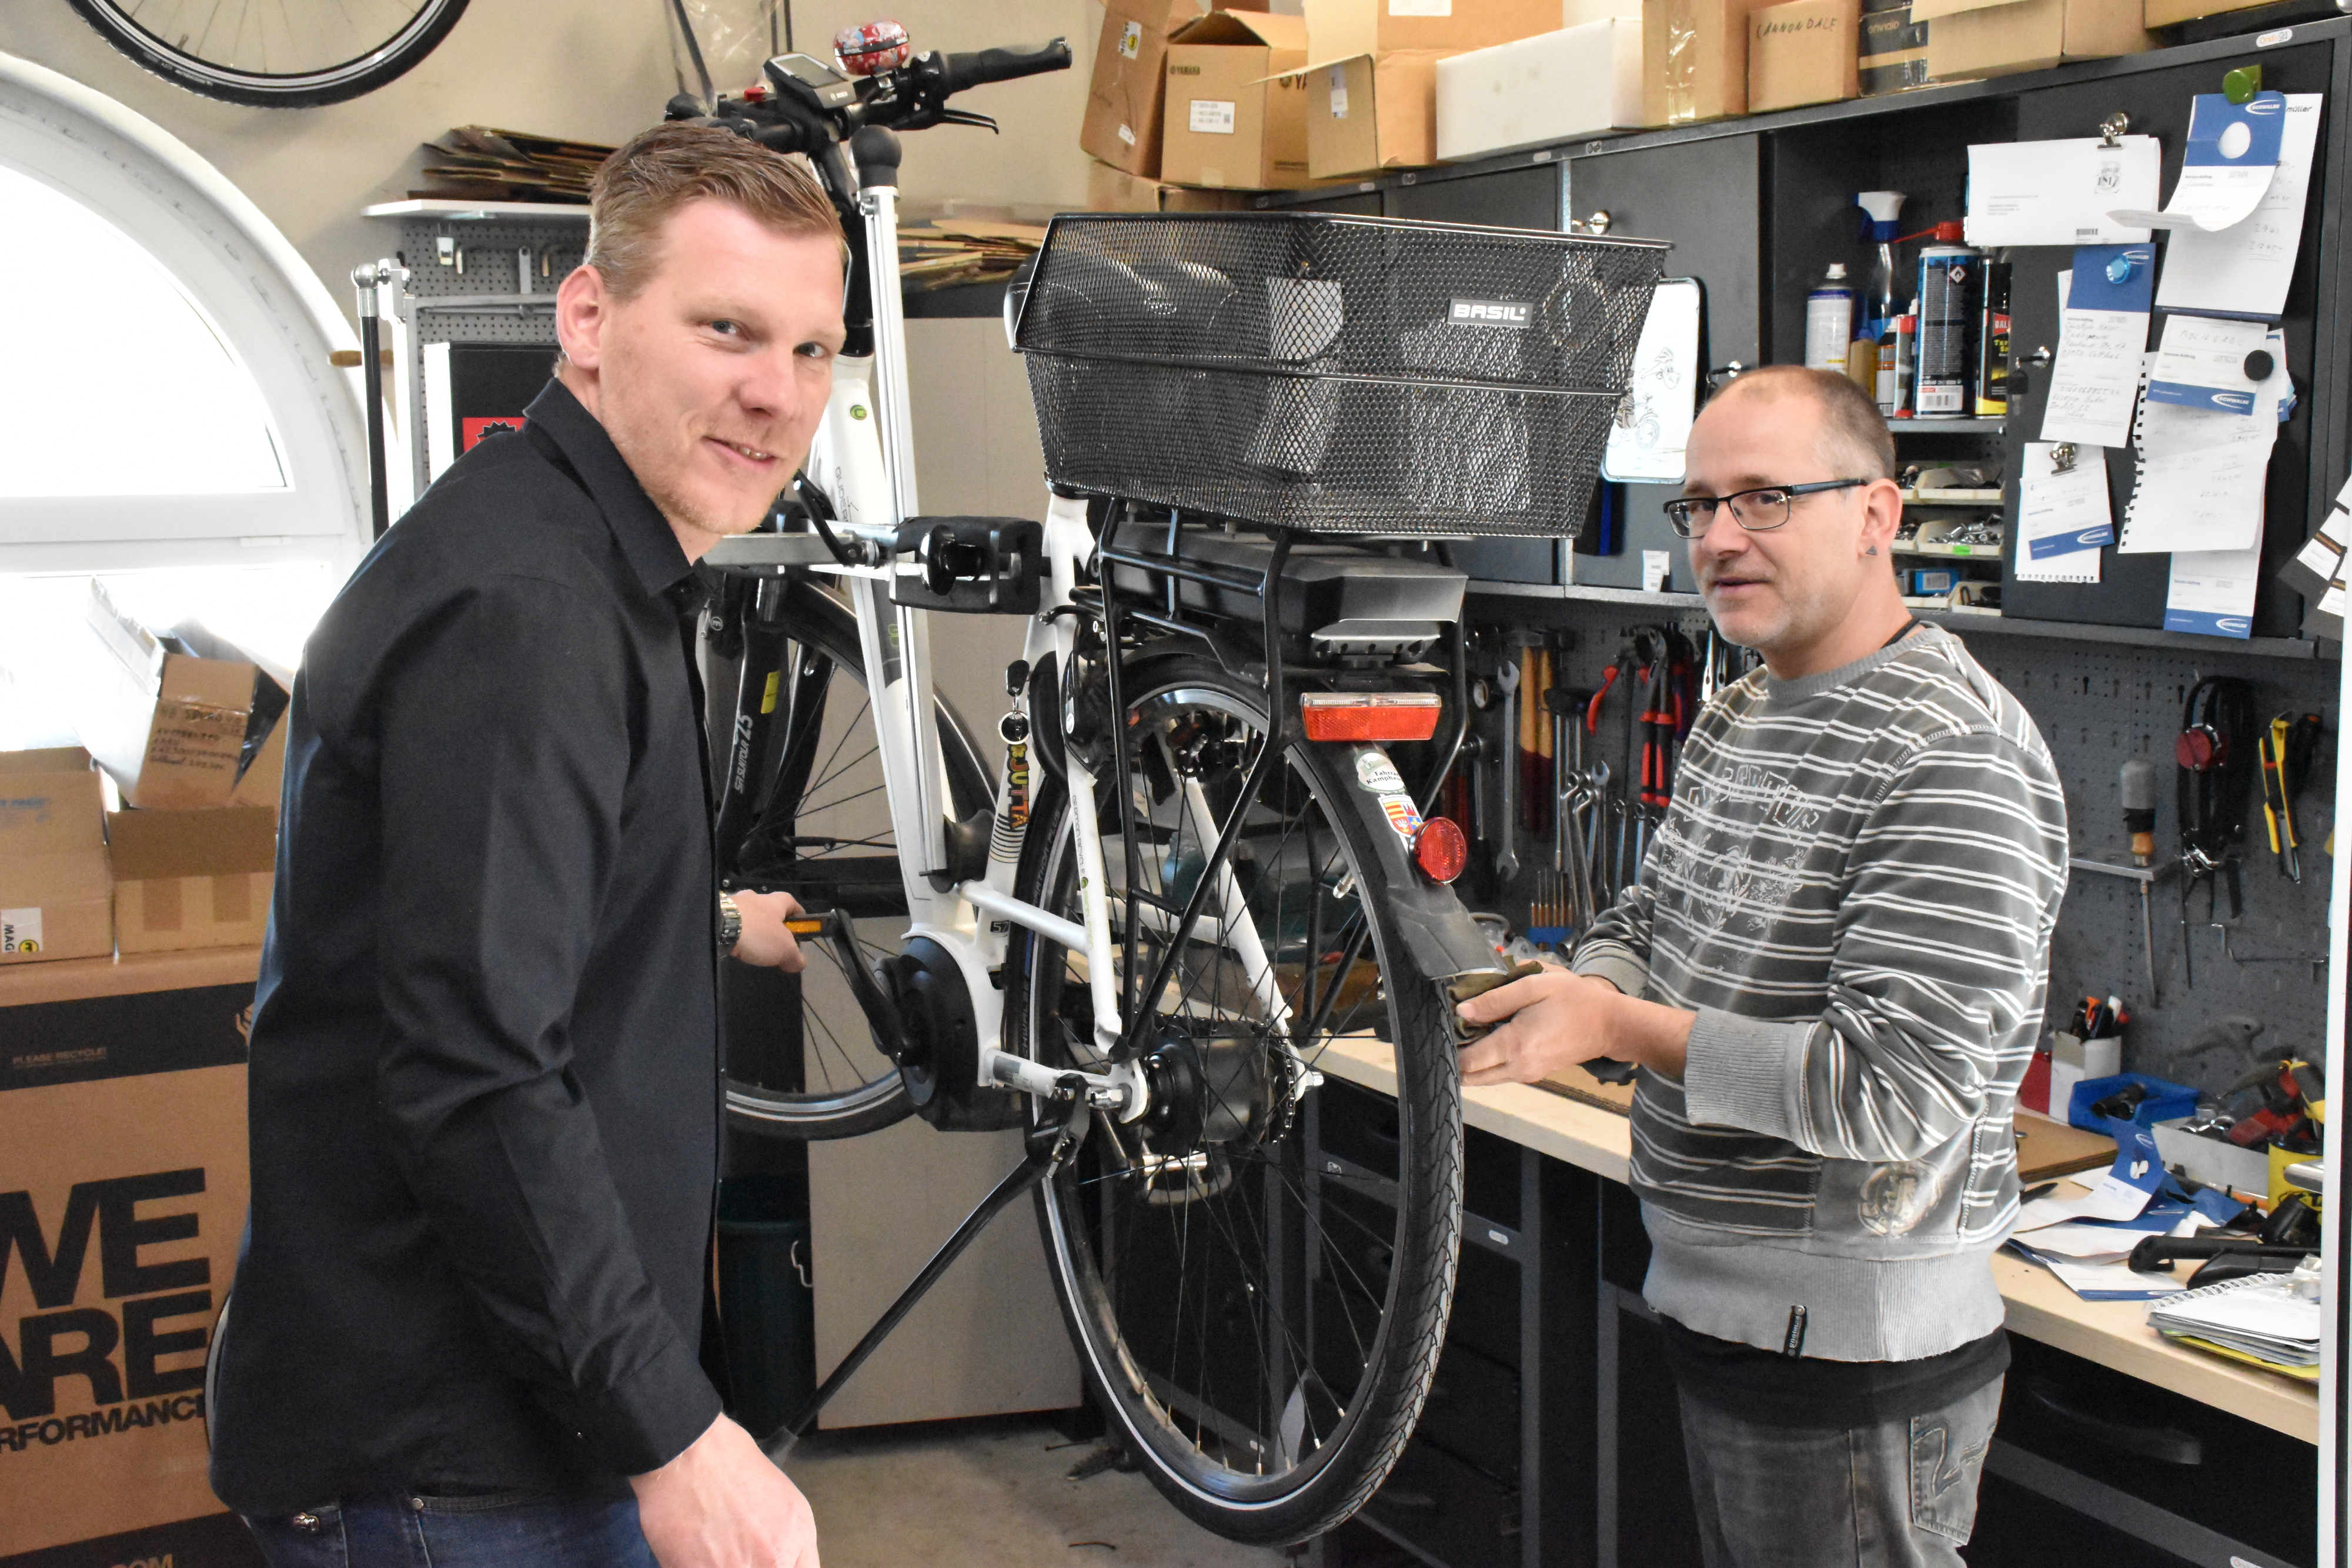 Der Lohner Fahrradhändler Stephan Bünger (links), im Bild mit Werkstattmitarbeiter Andreas Bentrup, bestätigt gute Geschäfte im Reparaturbetrieb wie auch im Verkauf. Foto: Kühn